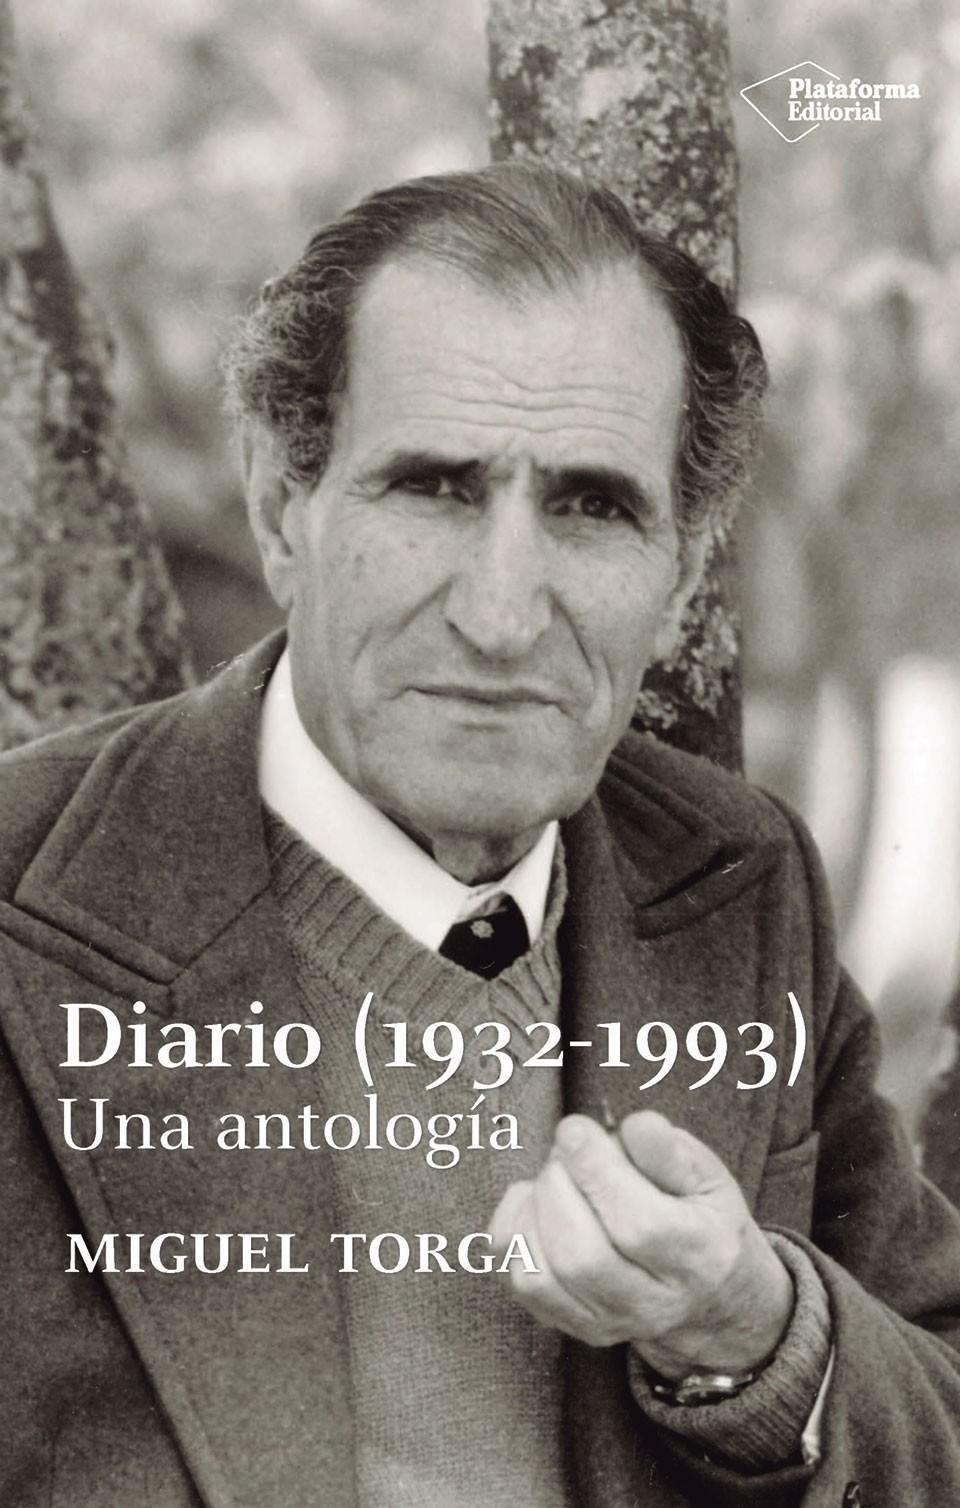 Diario (1932-1993) "Una antología"